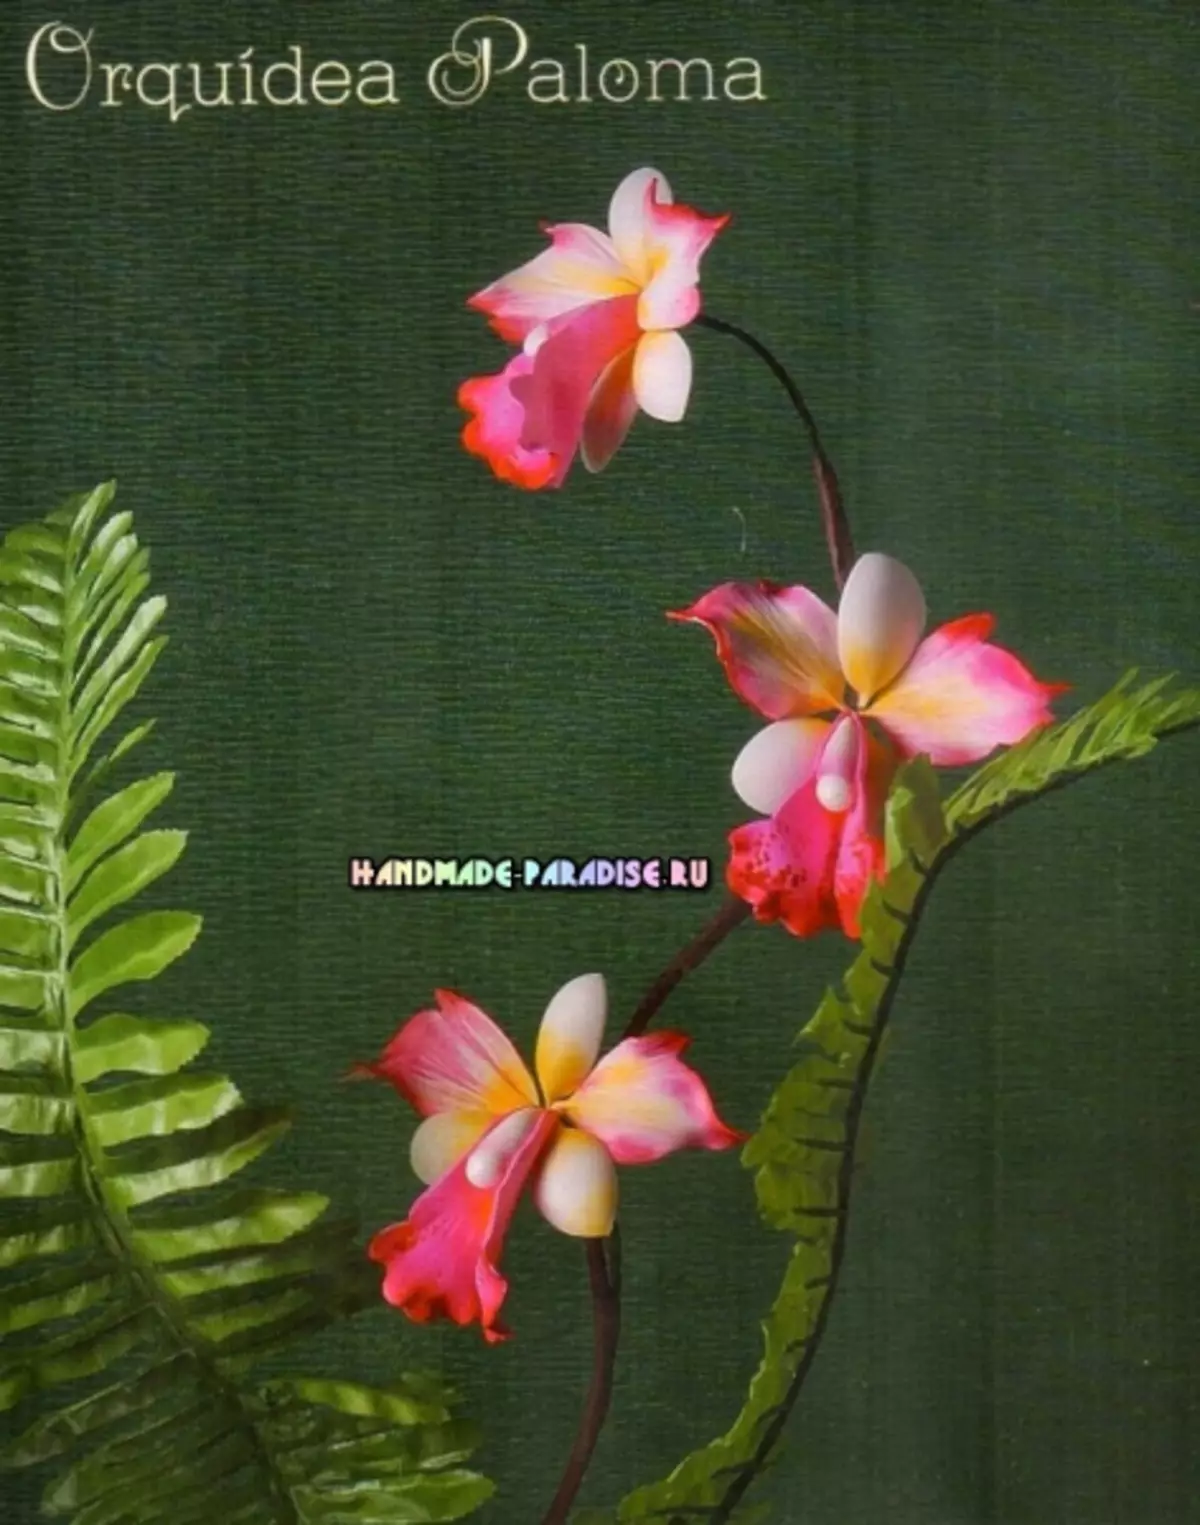 Hoa từ foamiran. Hướng dẫn và mô hình